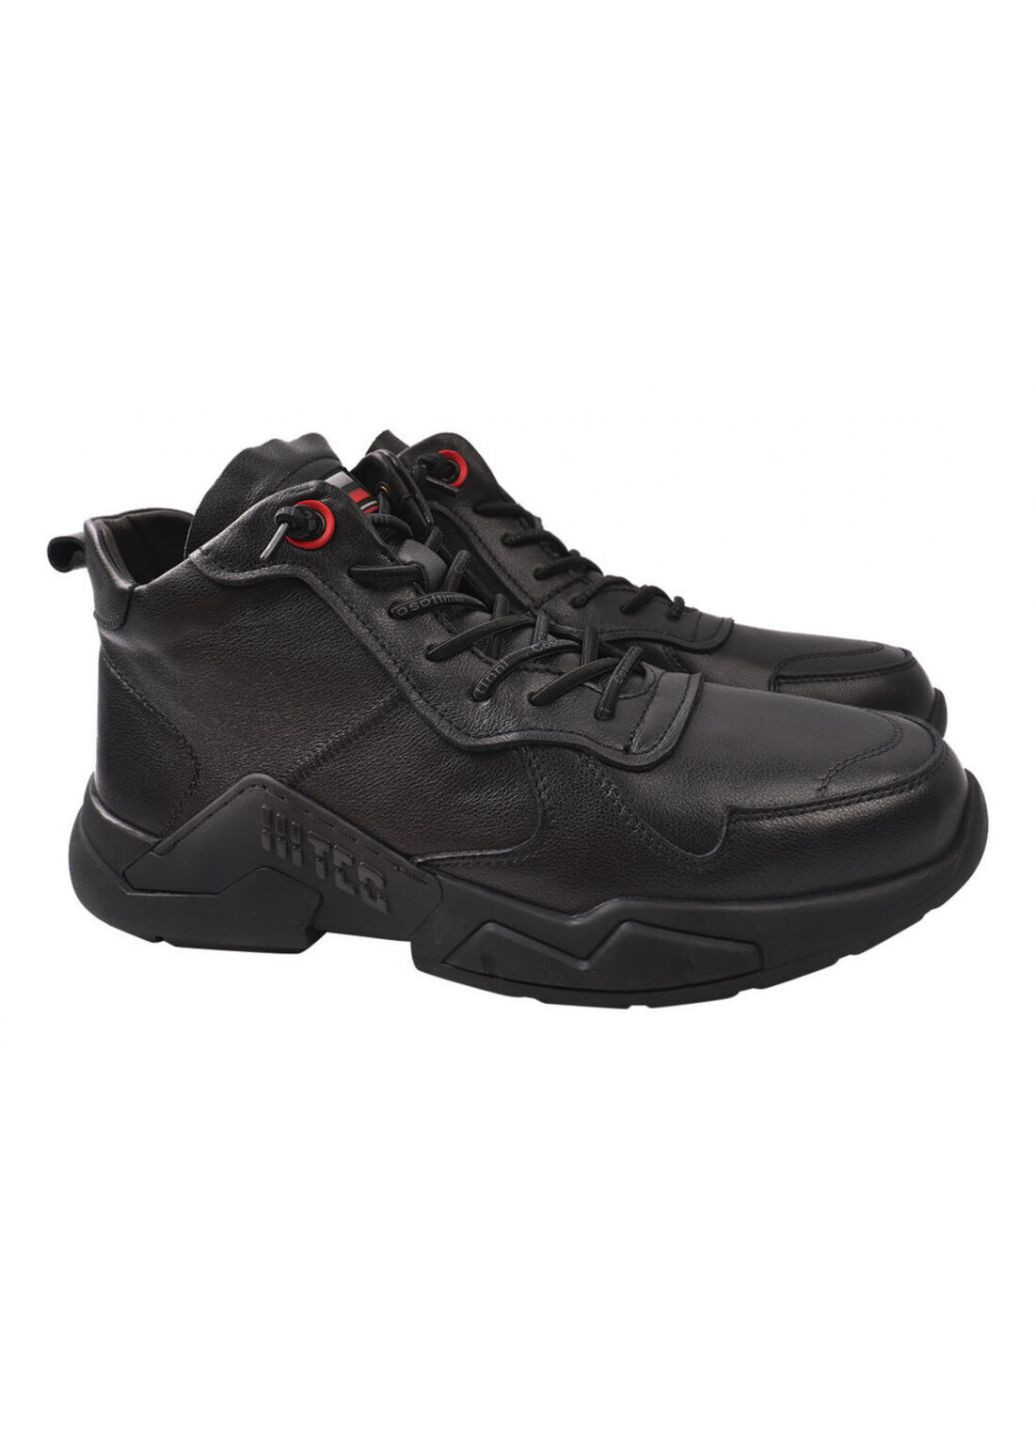 Черные ботинки мужские из натуральной кожи, на низком ходу, на шнуровке, черные, Cosottinni 313-21ZHS